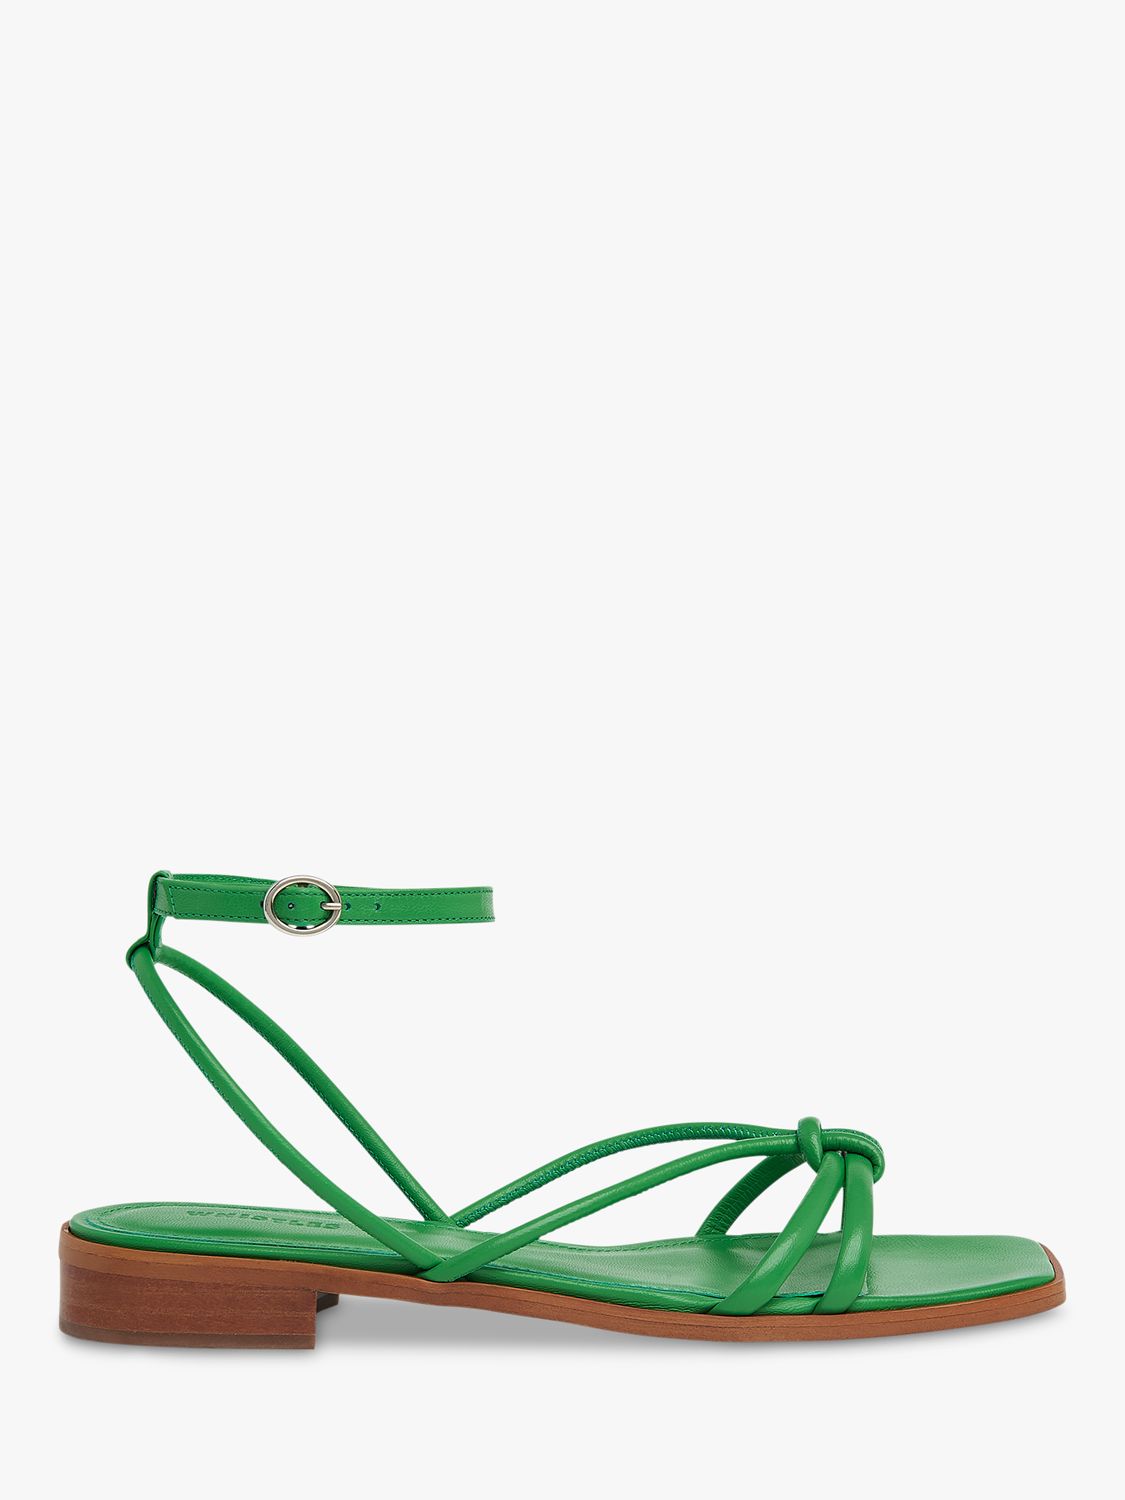 green sandals next